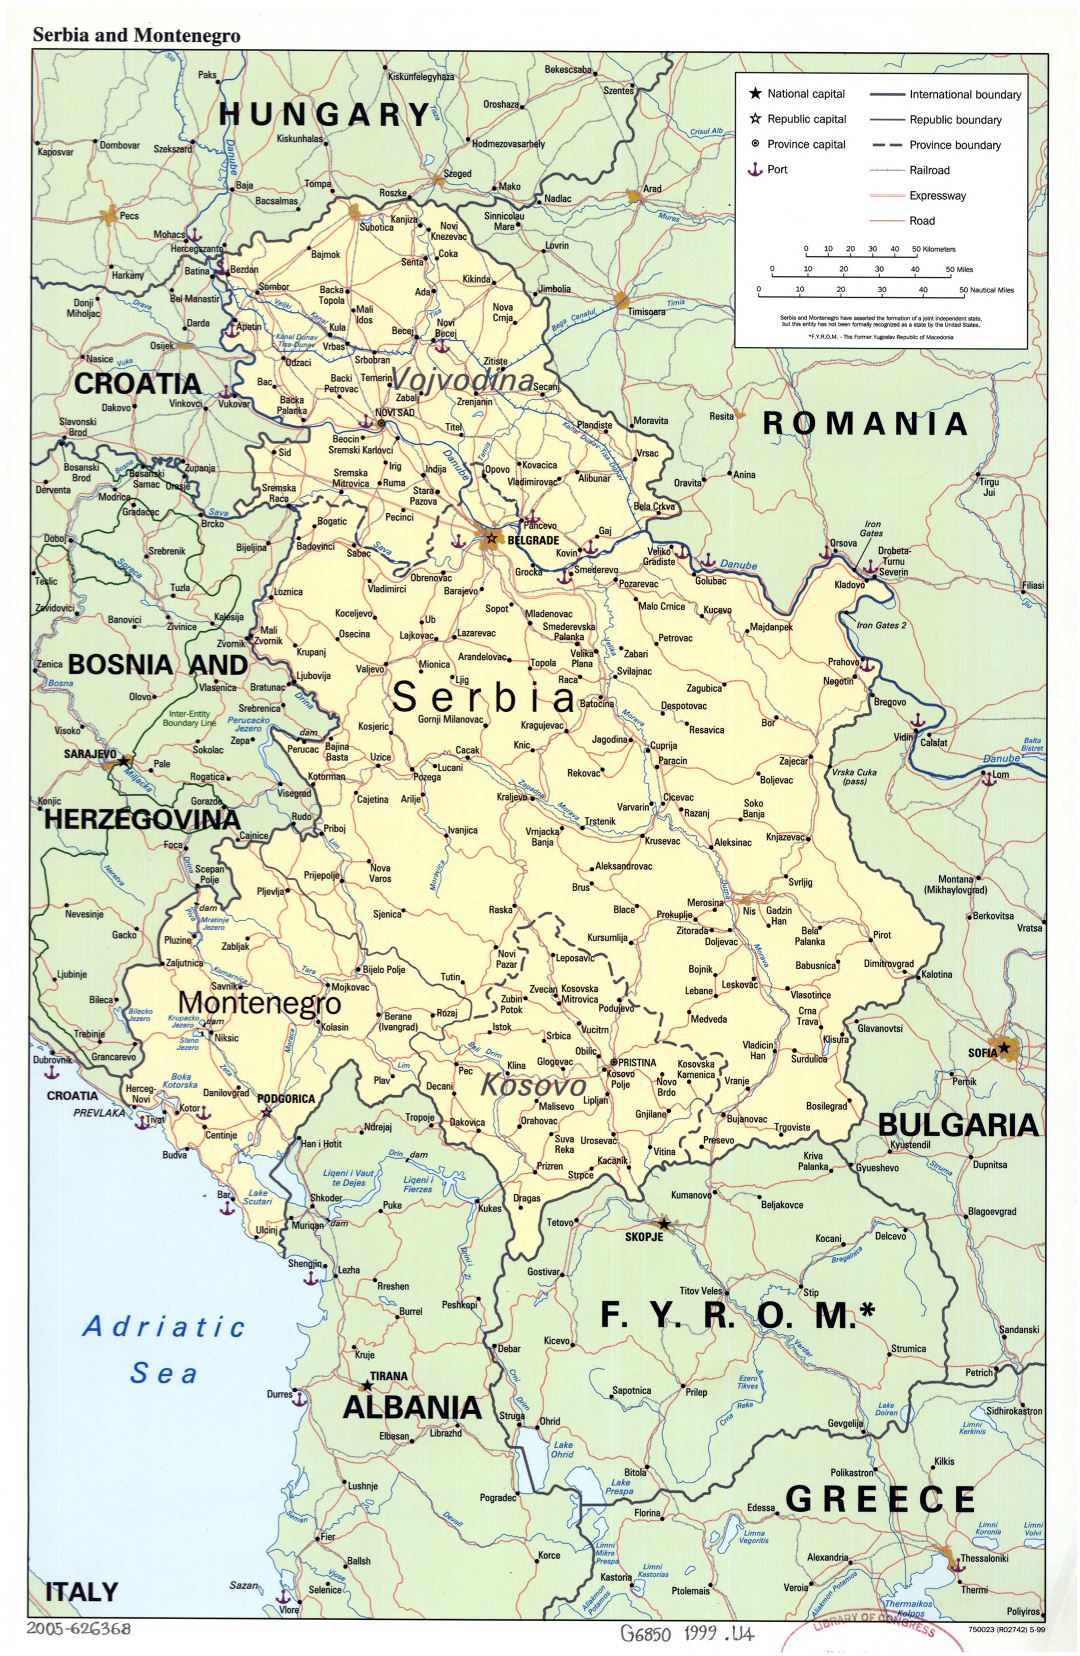 A gran escala mapa político de Serbia, Montenegro y Kosovo con carreteras, ferrocarriles, puertos y principales ciudades - 1999